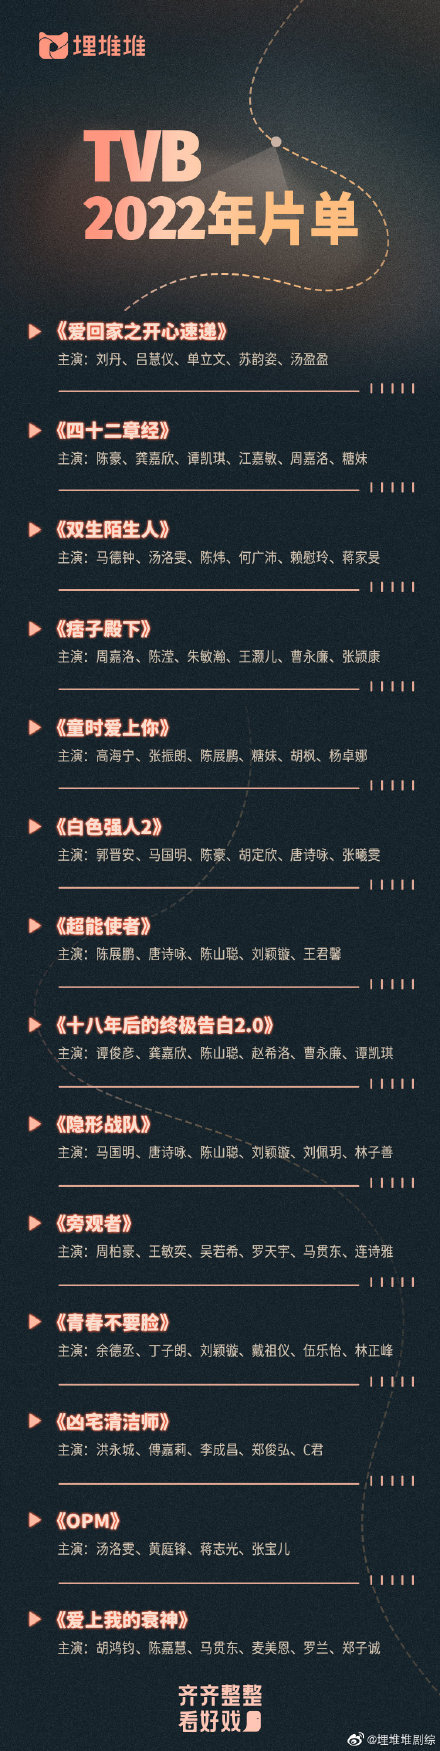 TVB2022年片单 TVB2022年电视剧片单